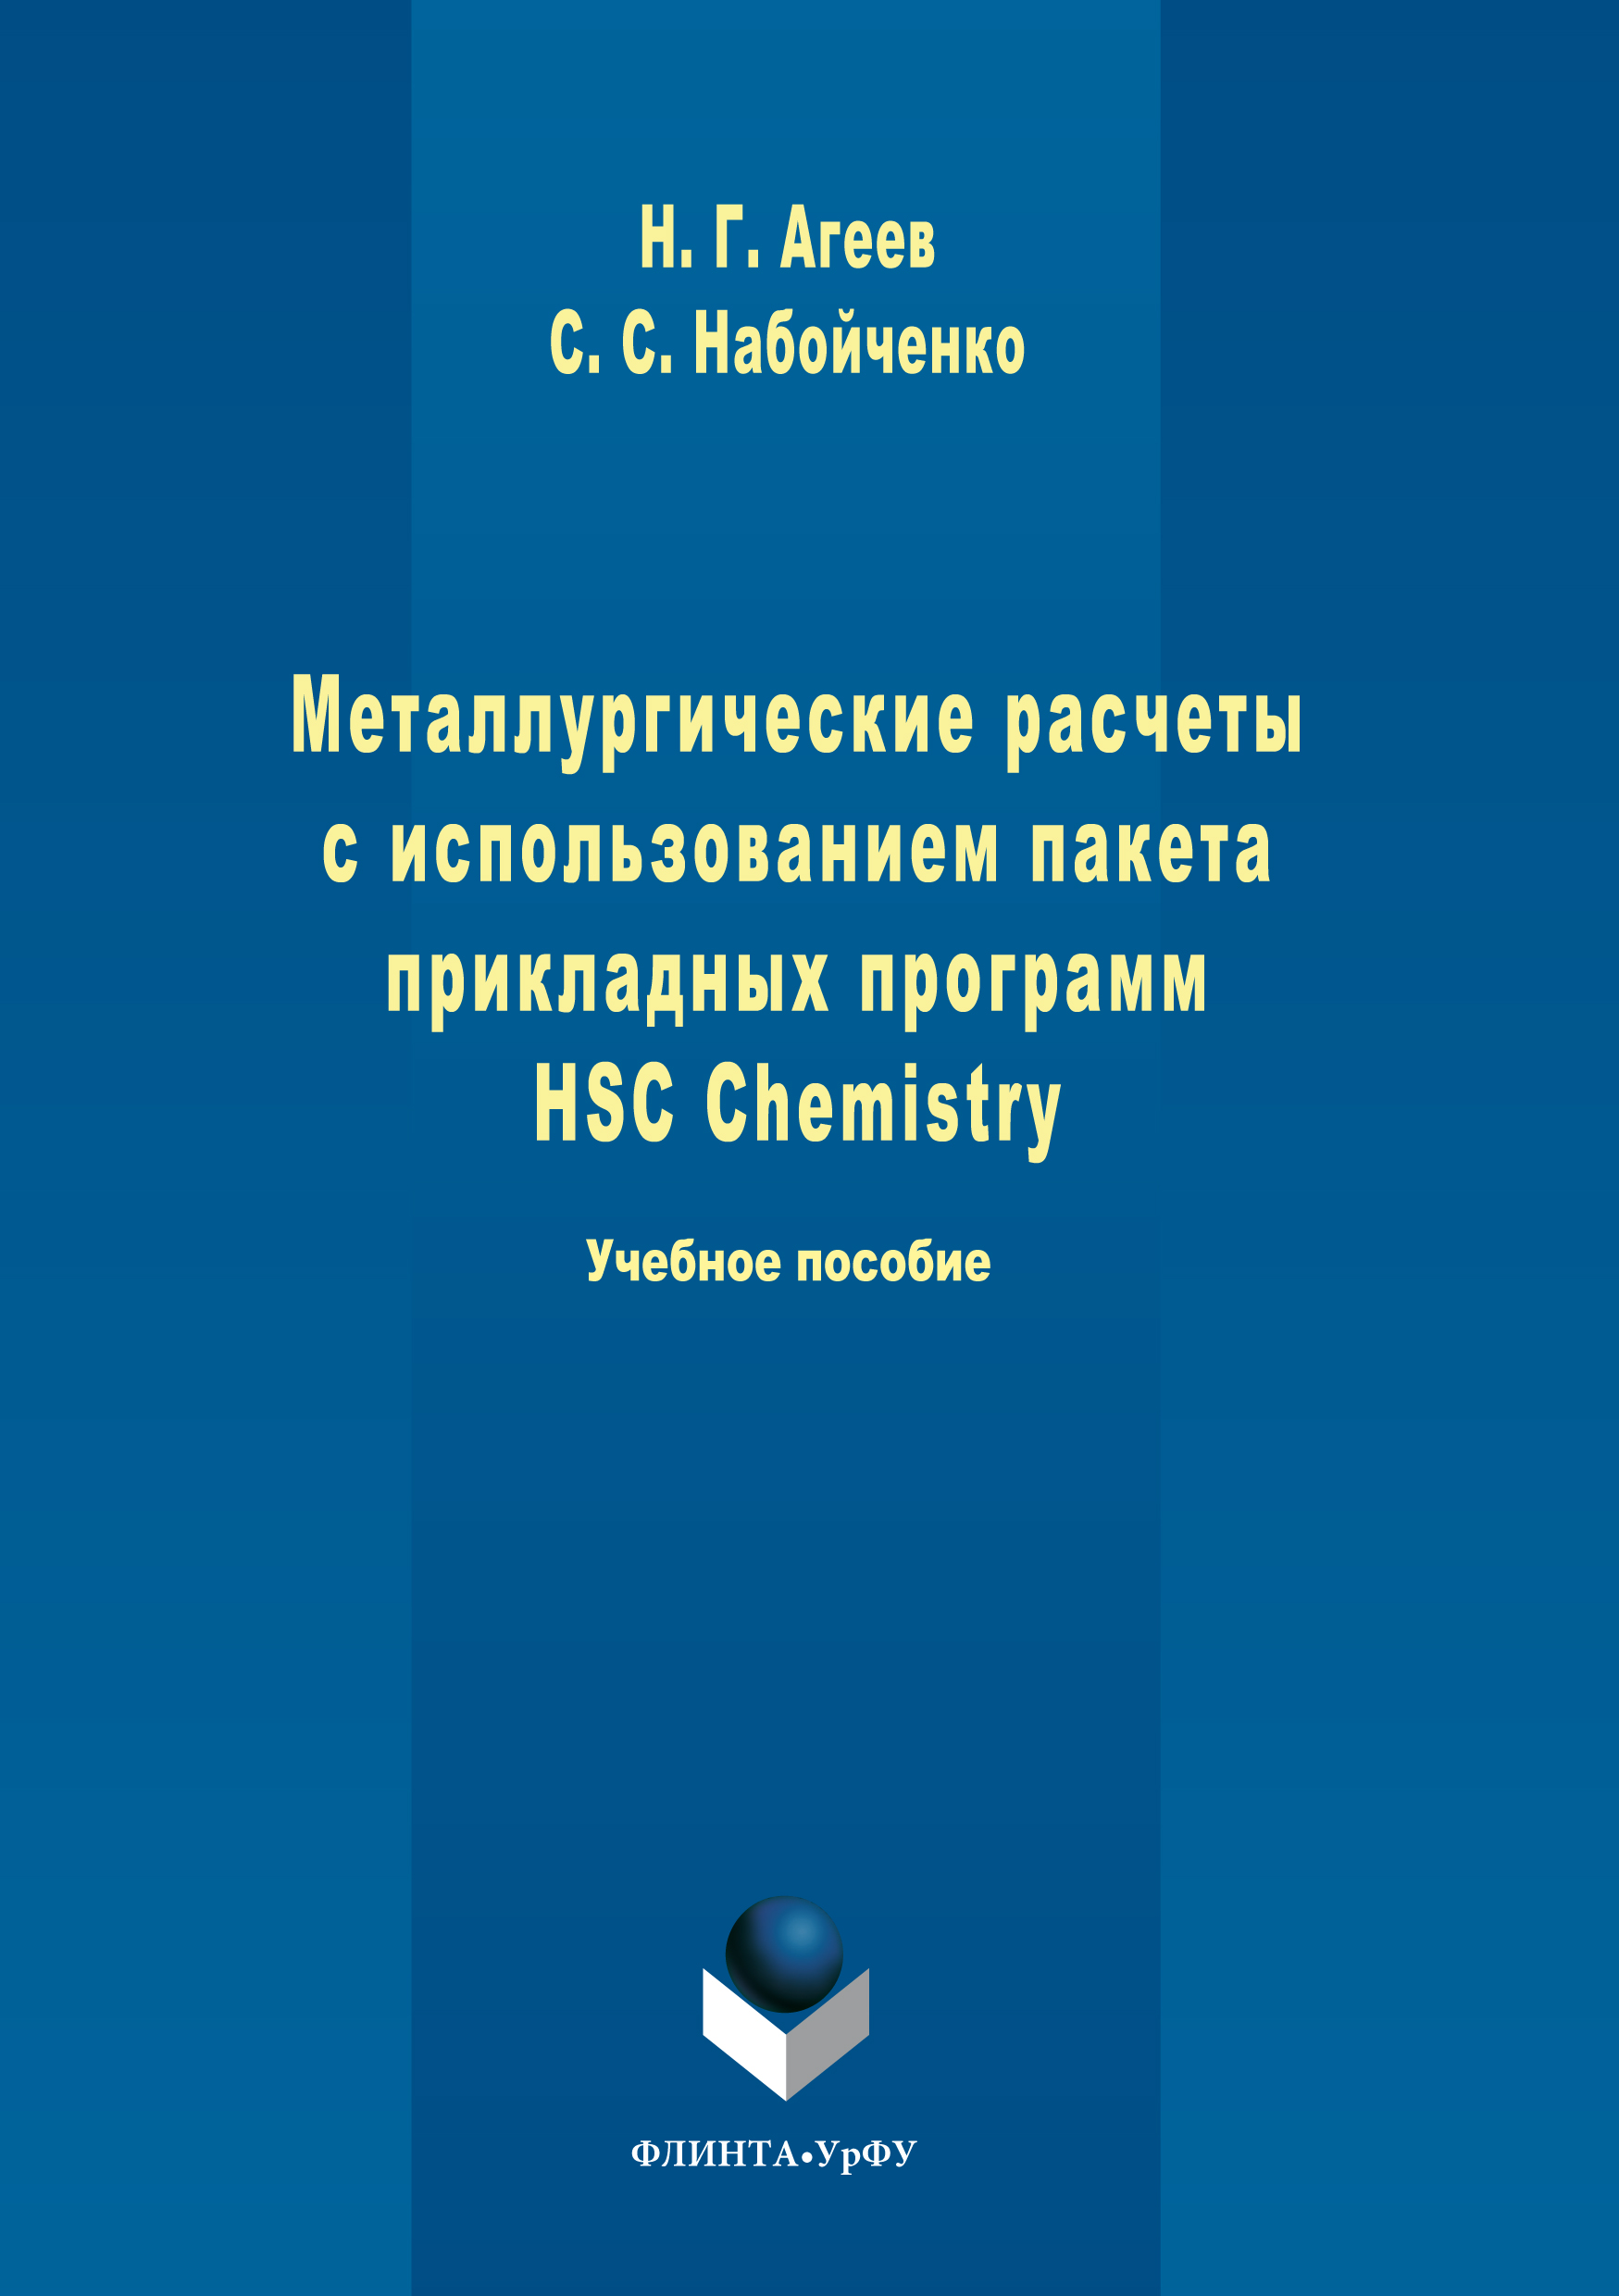 Книга Металлургические расчеты с использованием пакета прикладных программ HSC Chemistry  из серии , созданная Никифор Агеев, Станислав Набойченко, может относится к жанру Учебная литература. Стоимость книги Металлургические расчеты с использованием пакета прикладных программ HSC Chemistry   с идентификатором 24183040 составляет 110.00 руб.